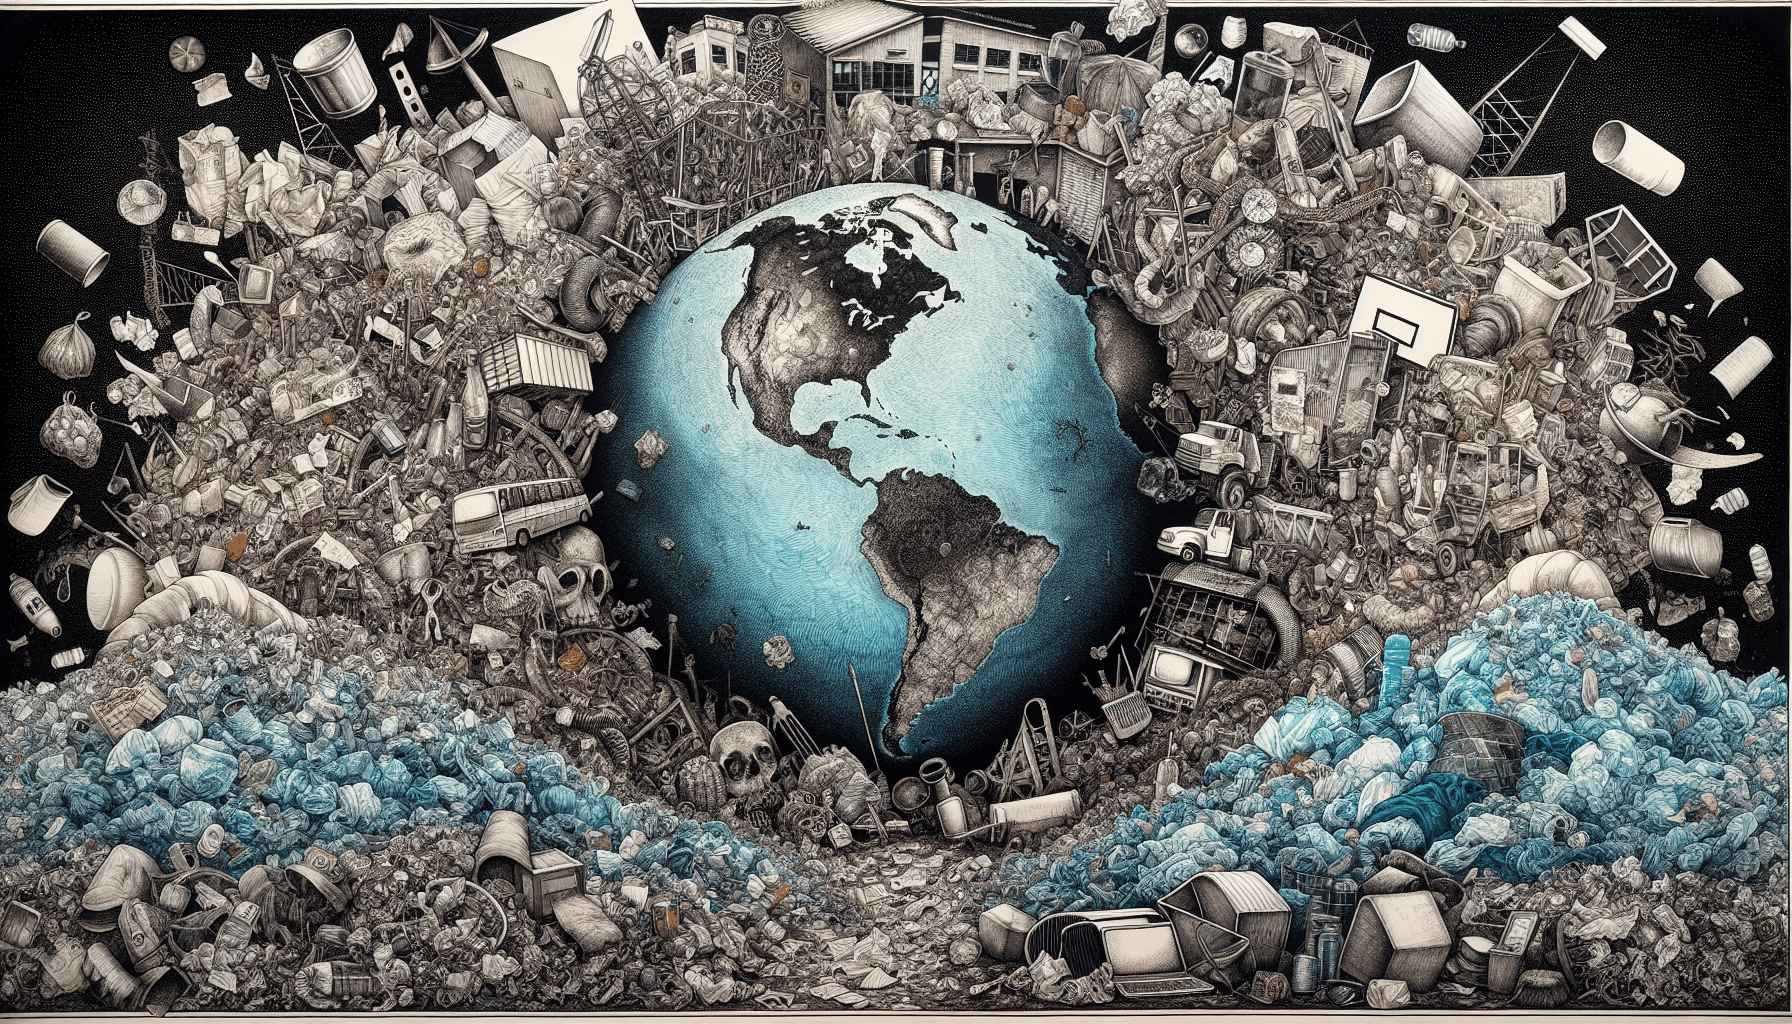 Illustration of global waste generation